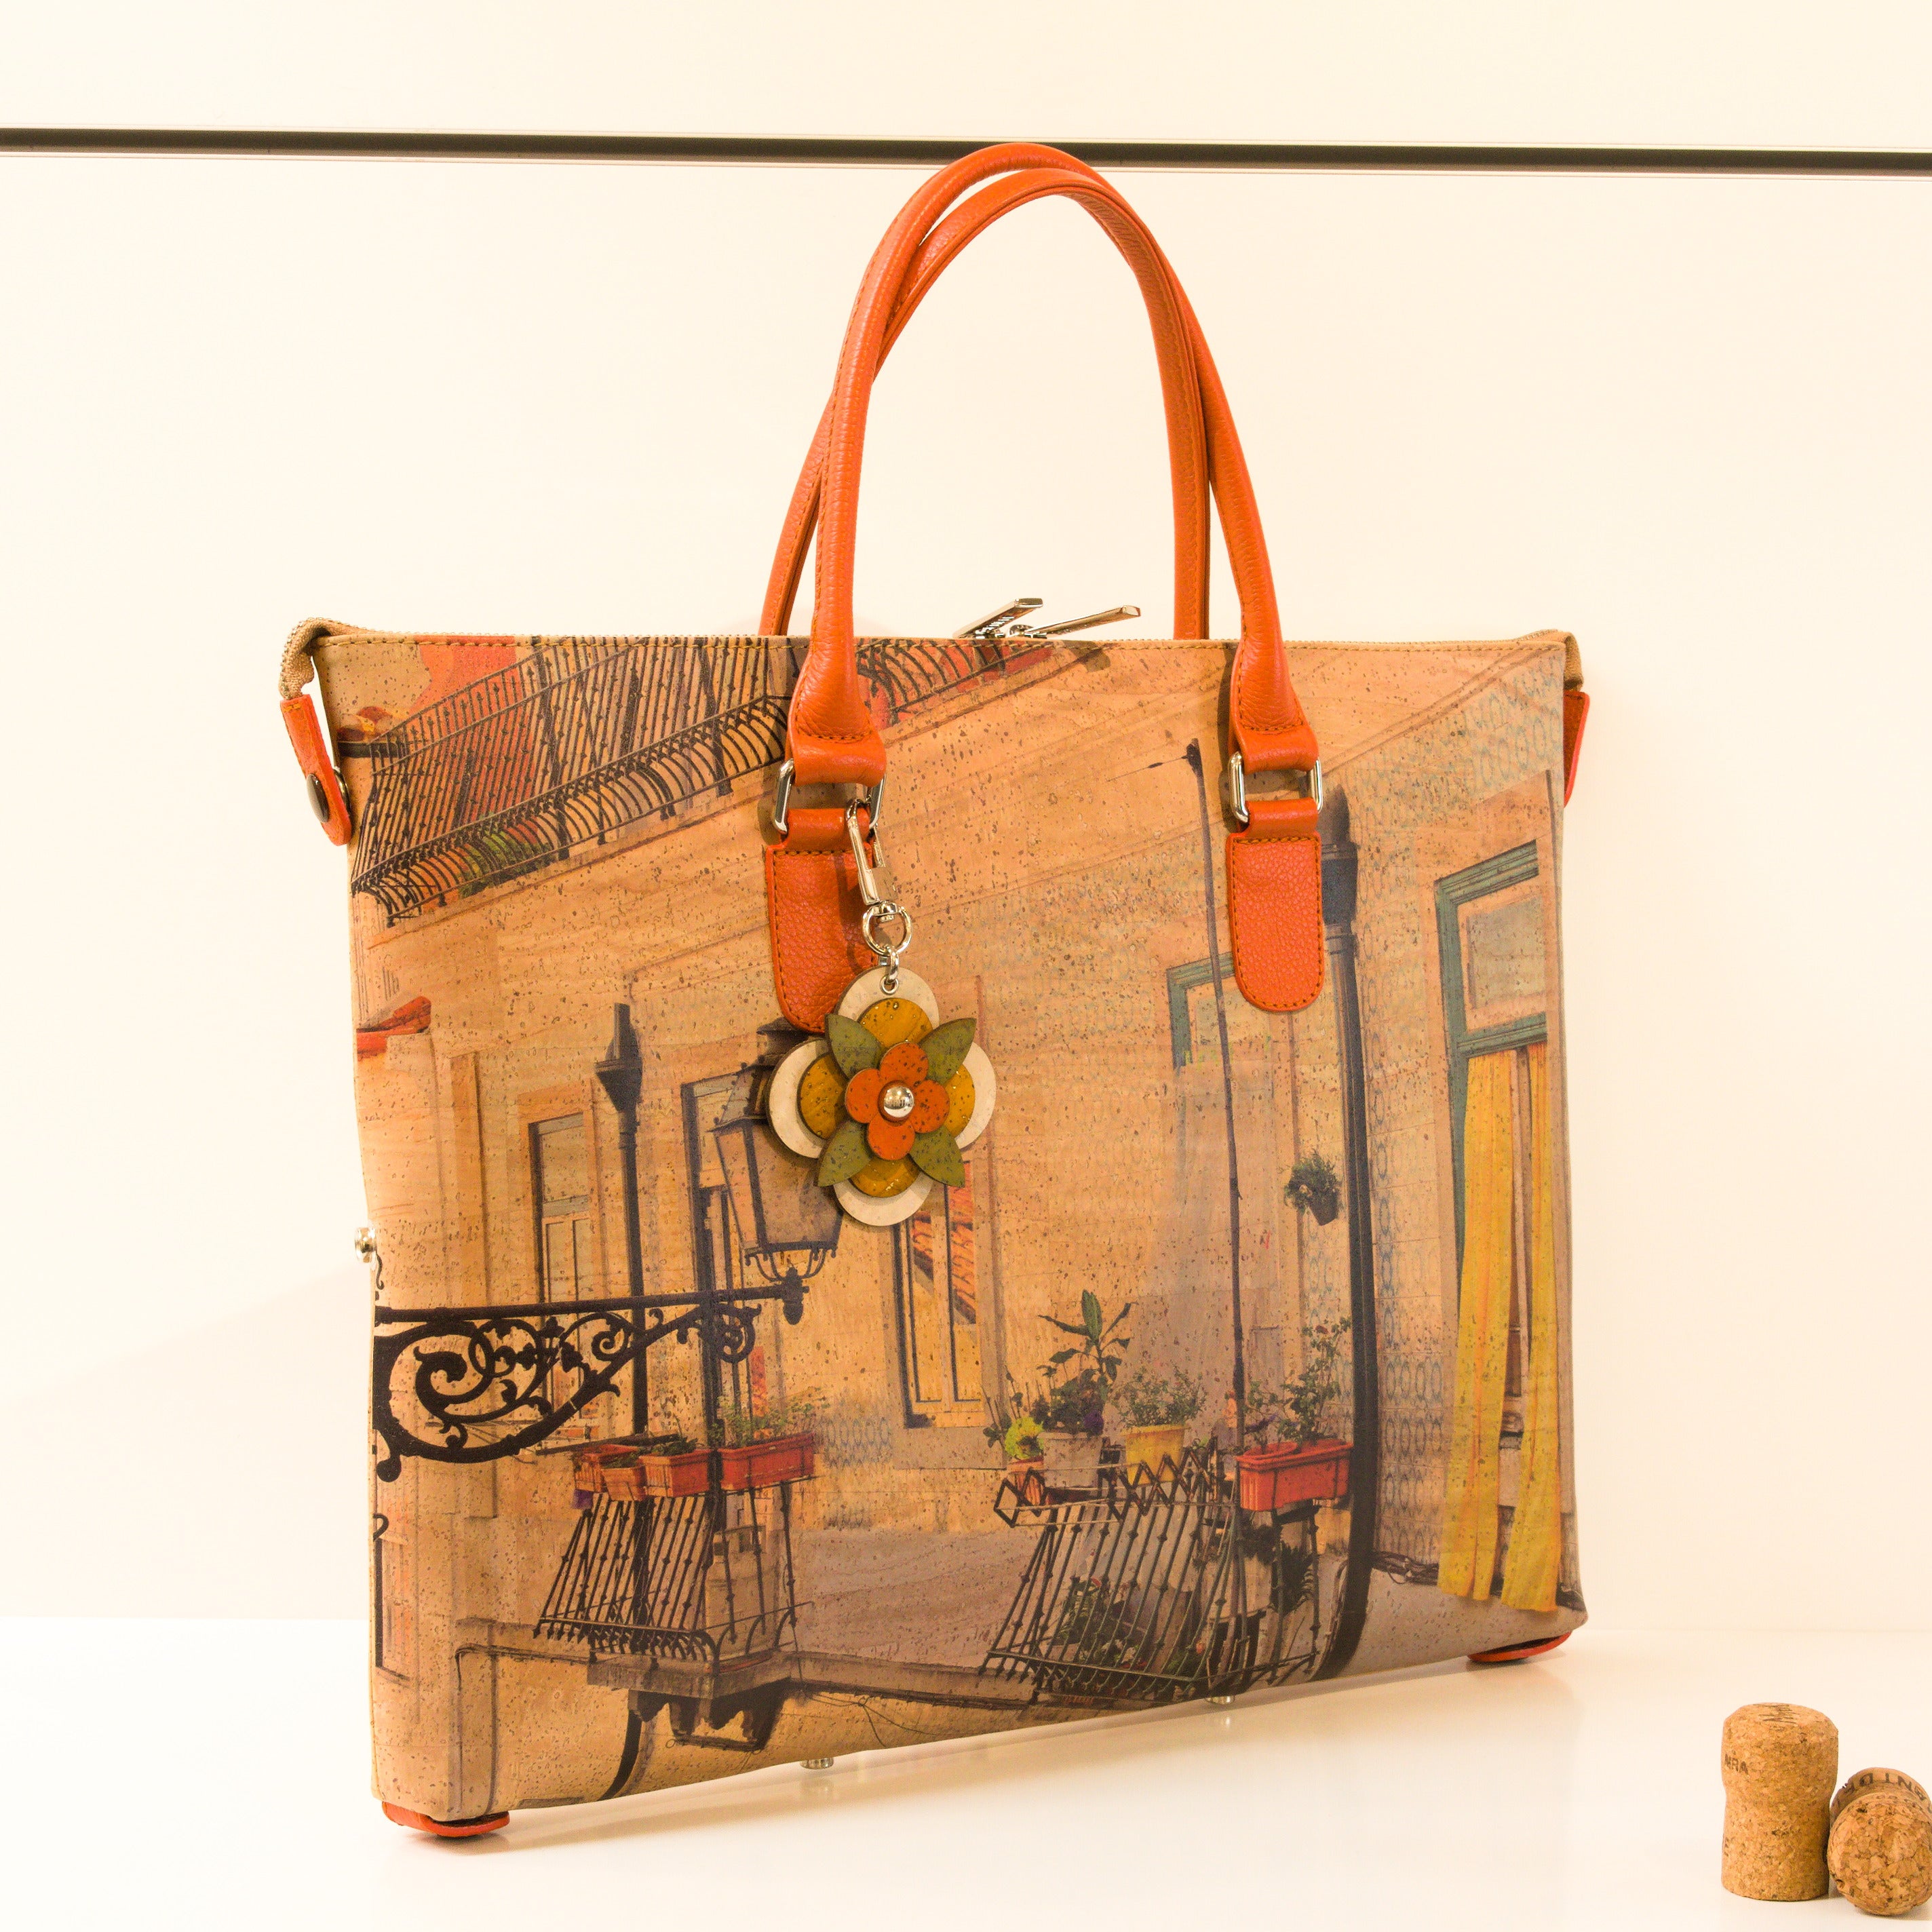 Kork Handtasche 3in1 * große Variante * verschiedene Designs * Umhängetasche für Frauen * Crossbody * Shopper * handmade in Portugal